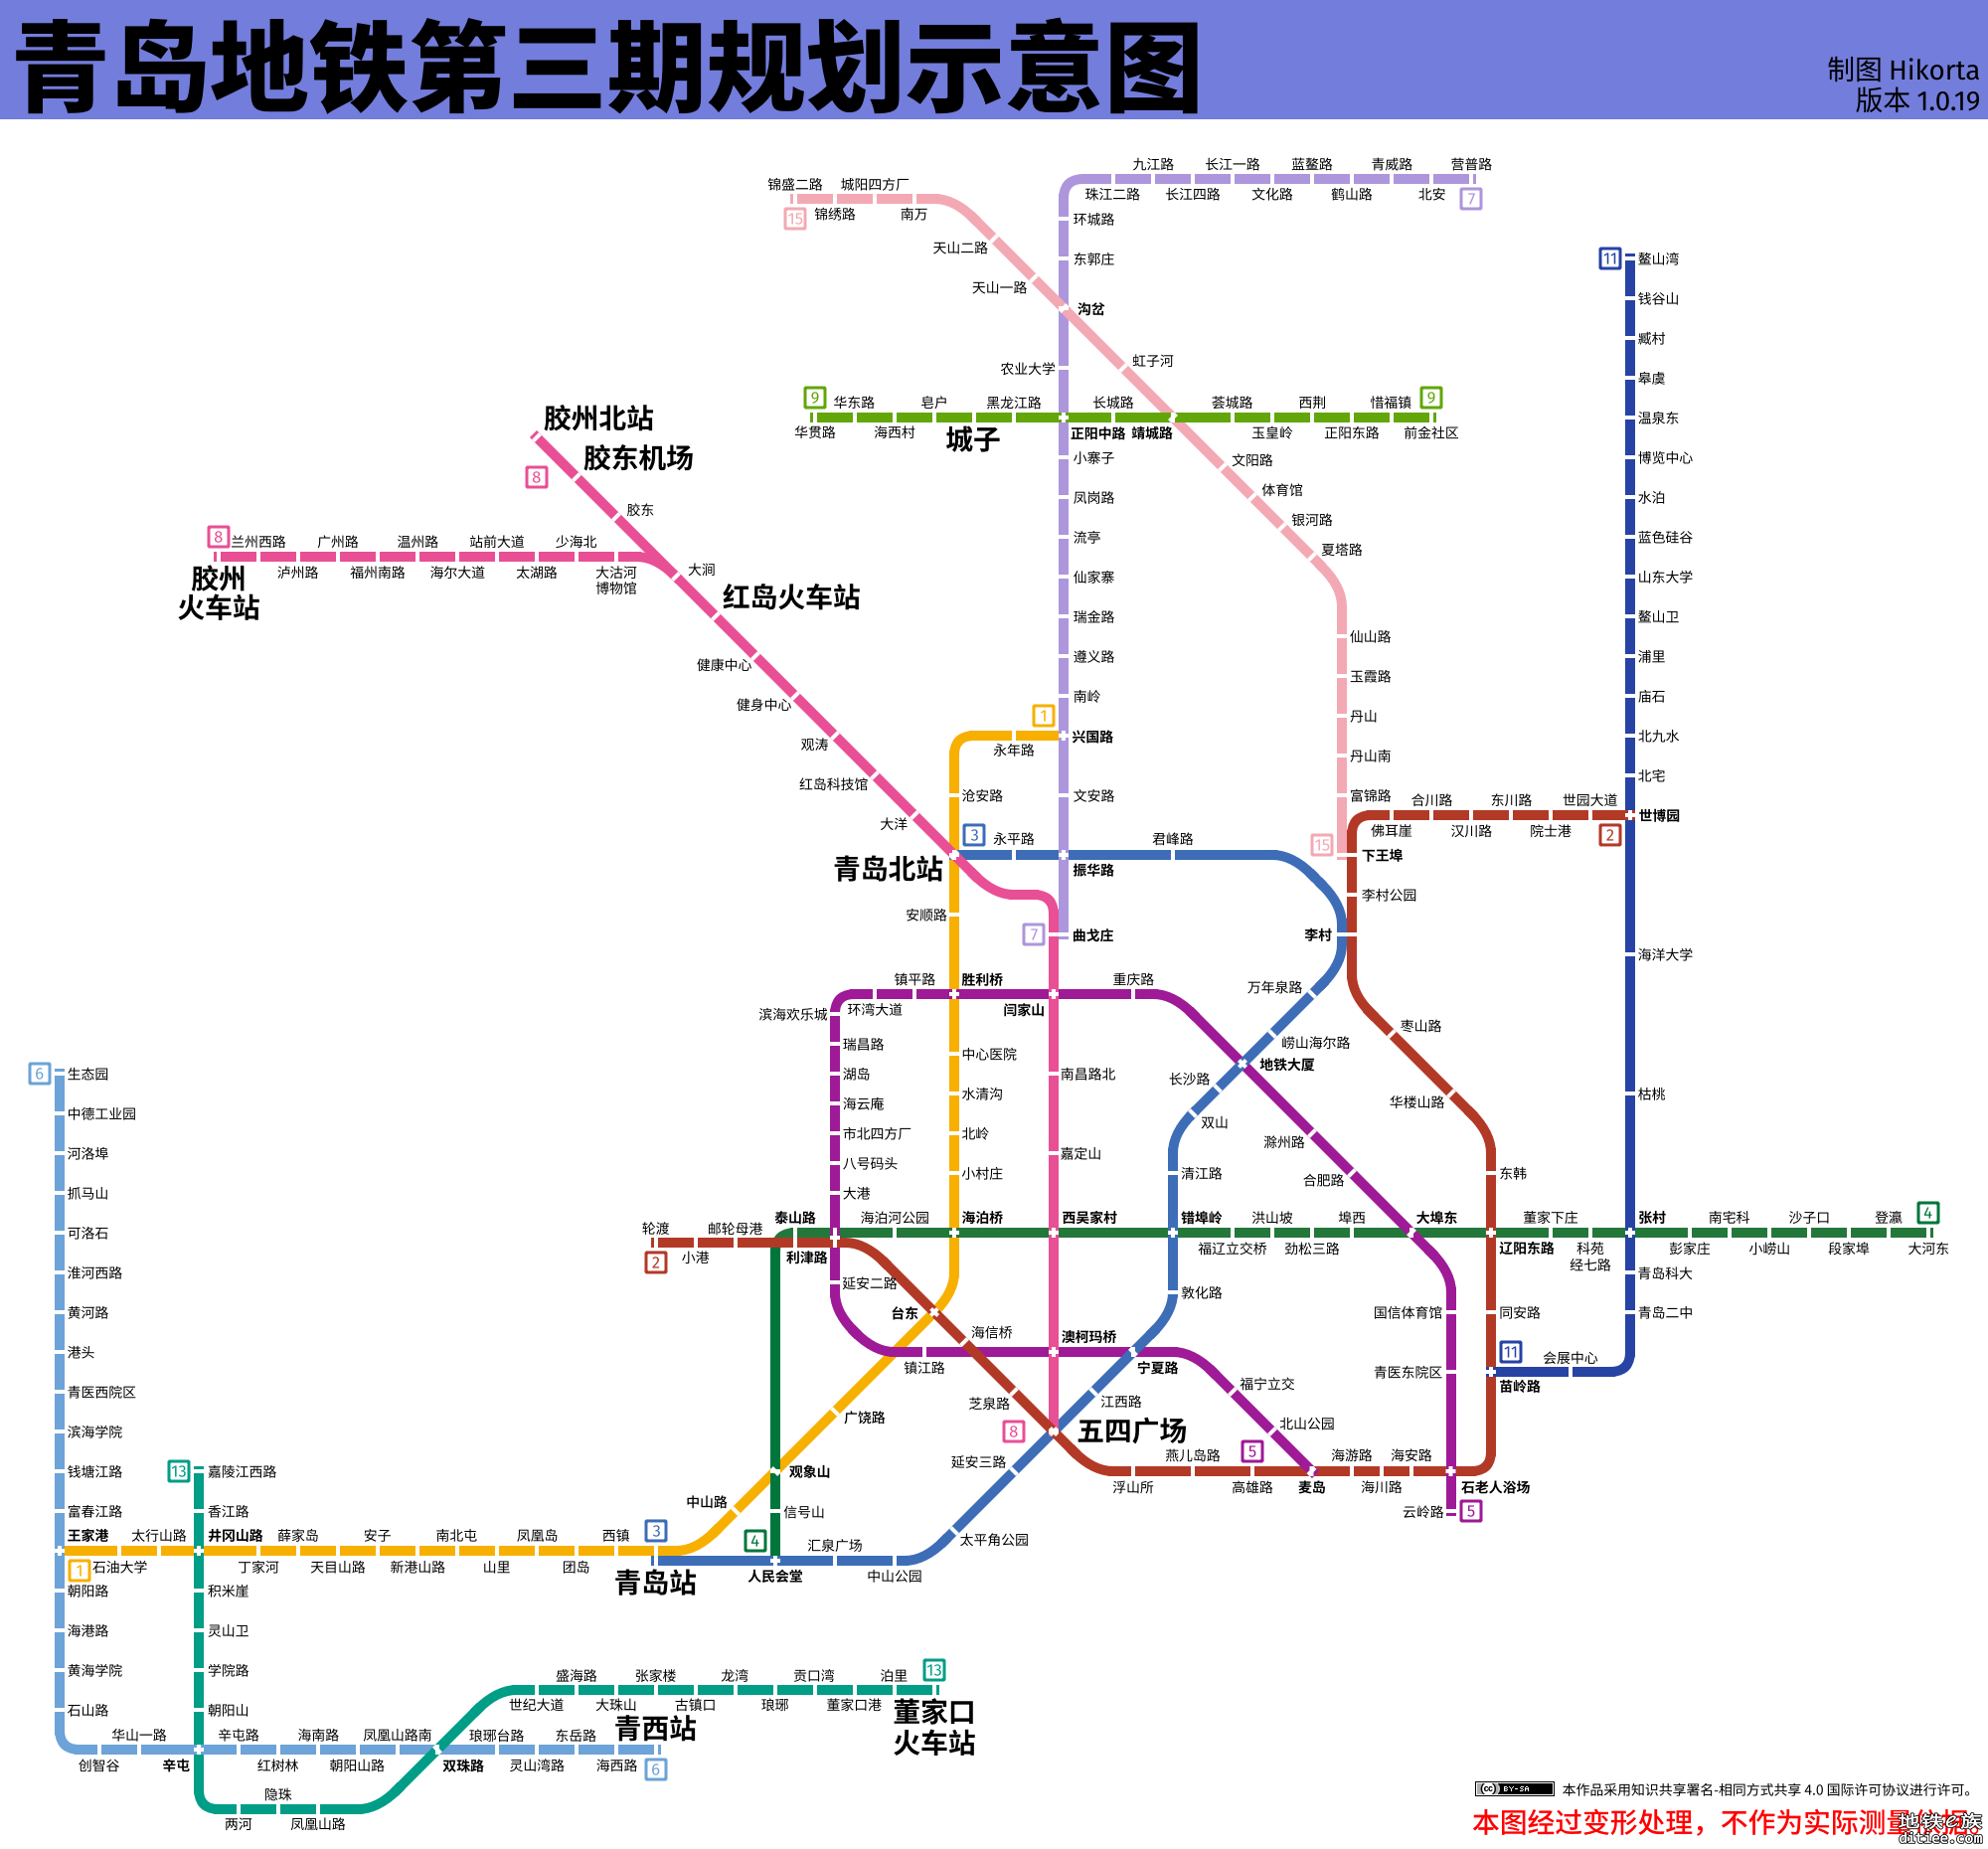 【搬运 皮鸭制图】青岛地铁第三期规划示意图